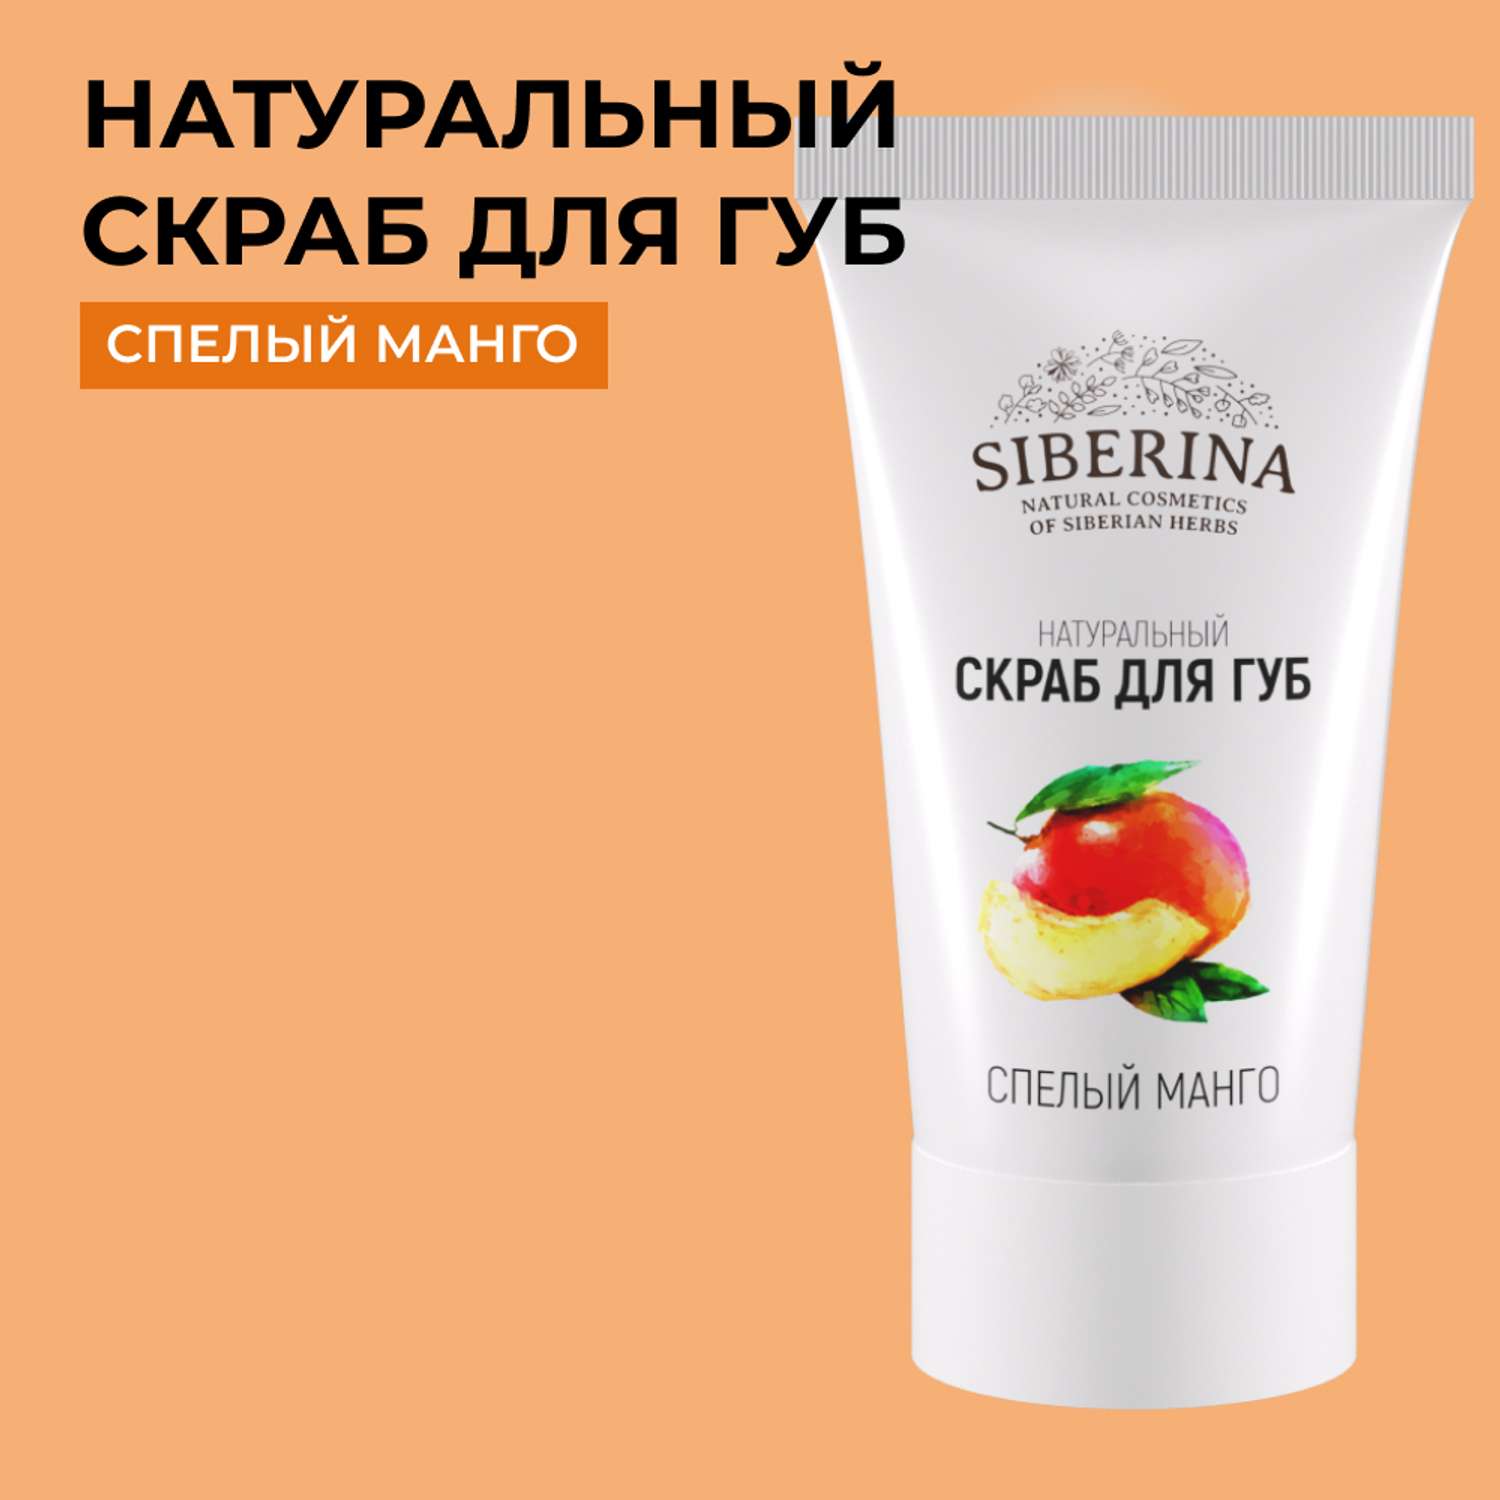 Скраб для губ Siberina натуральный «Спелый манго» 30 мл - фото 1